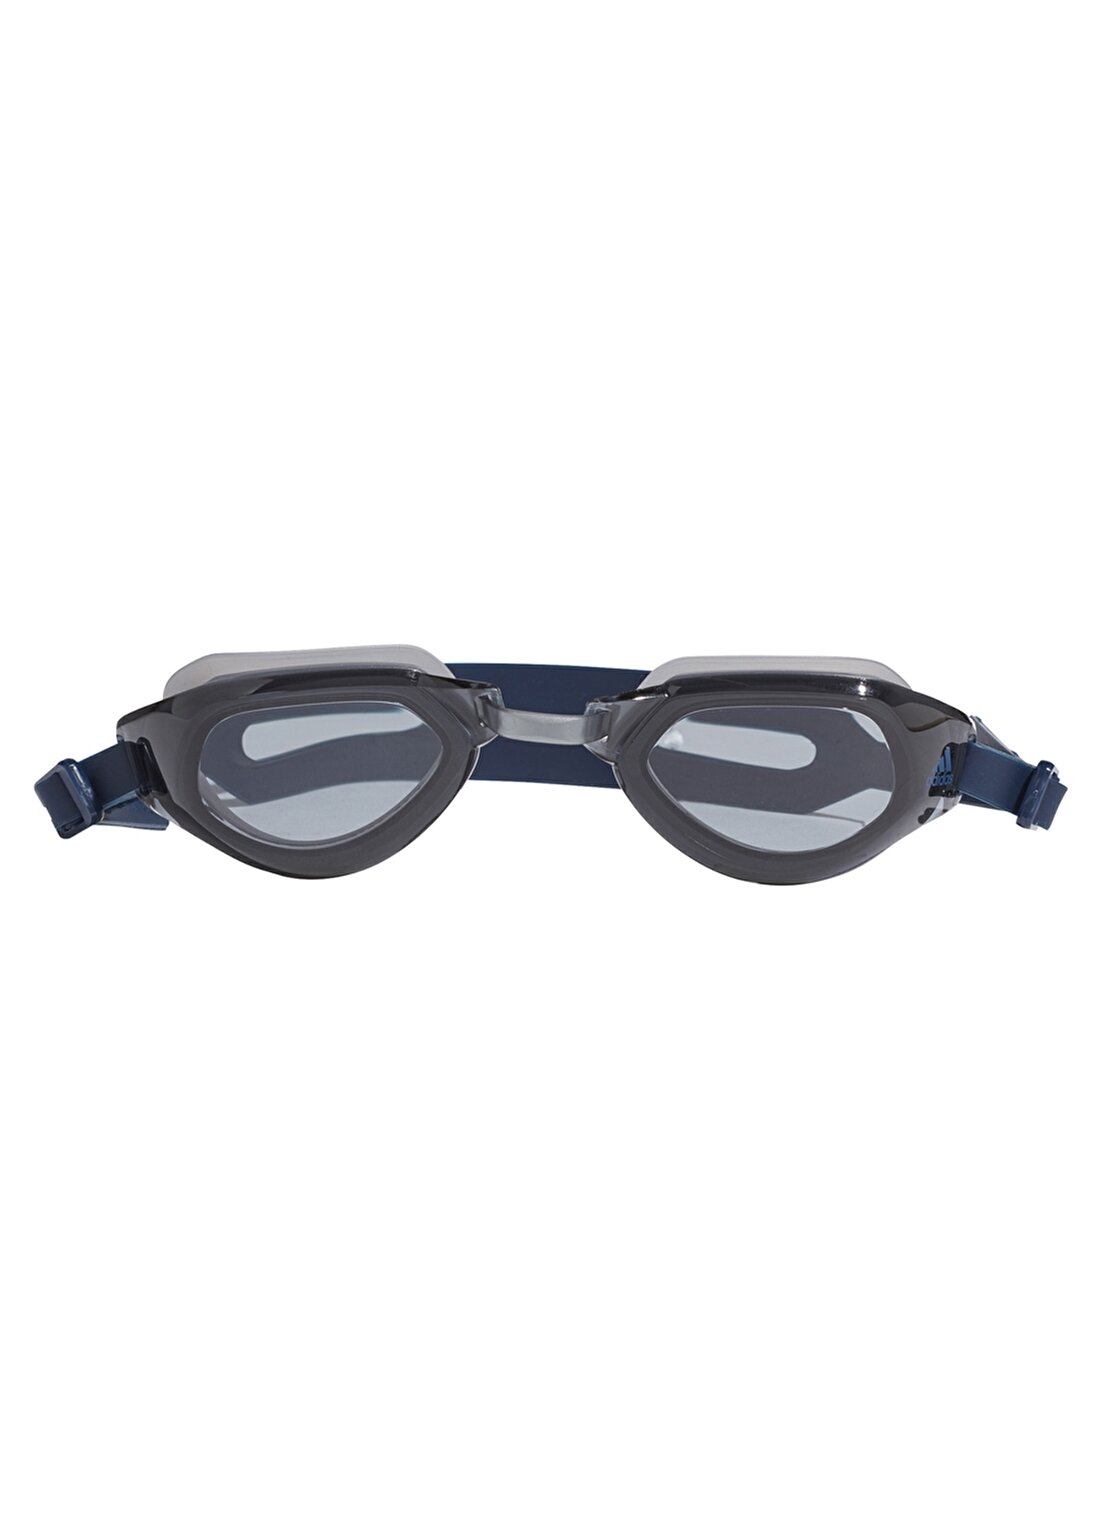 Adidas Gp1017 Persistar Fit Unisex Yüzücü Gözlüğü